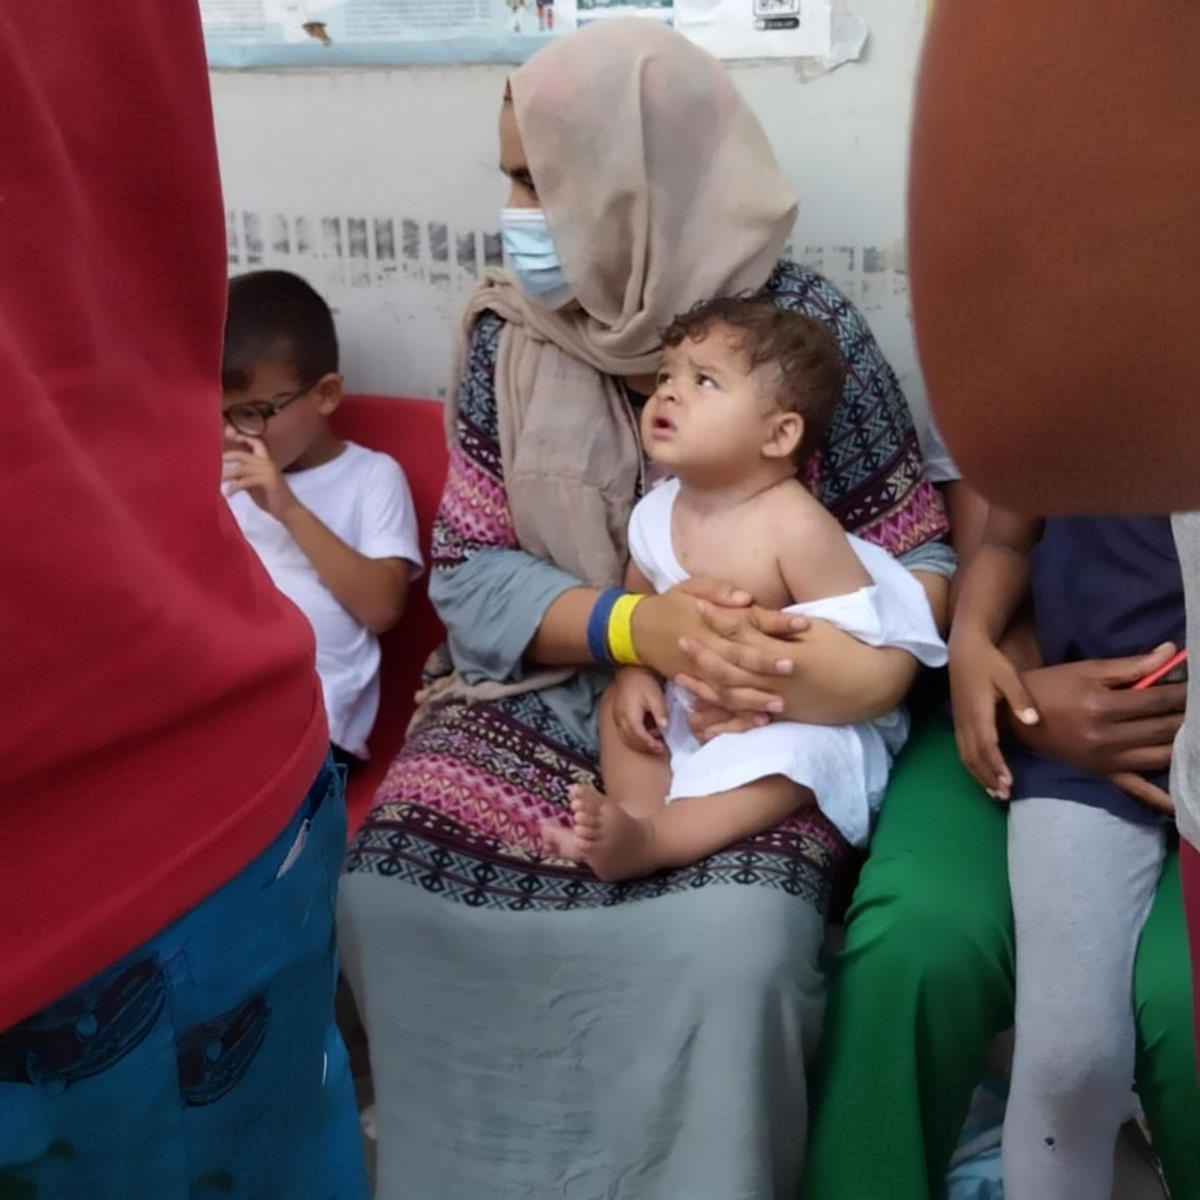 Save the Children: situazione critica a Lampedusa per centinaia di minori soli e bambini sbarcati sull'isola negli ultimi giorni